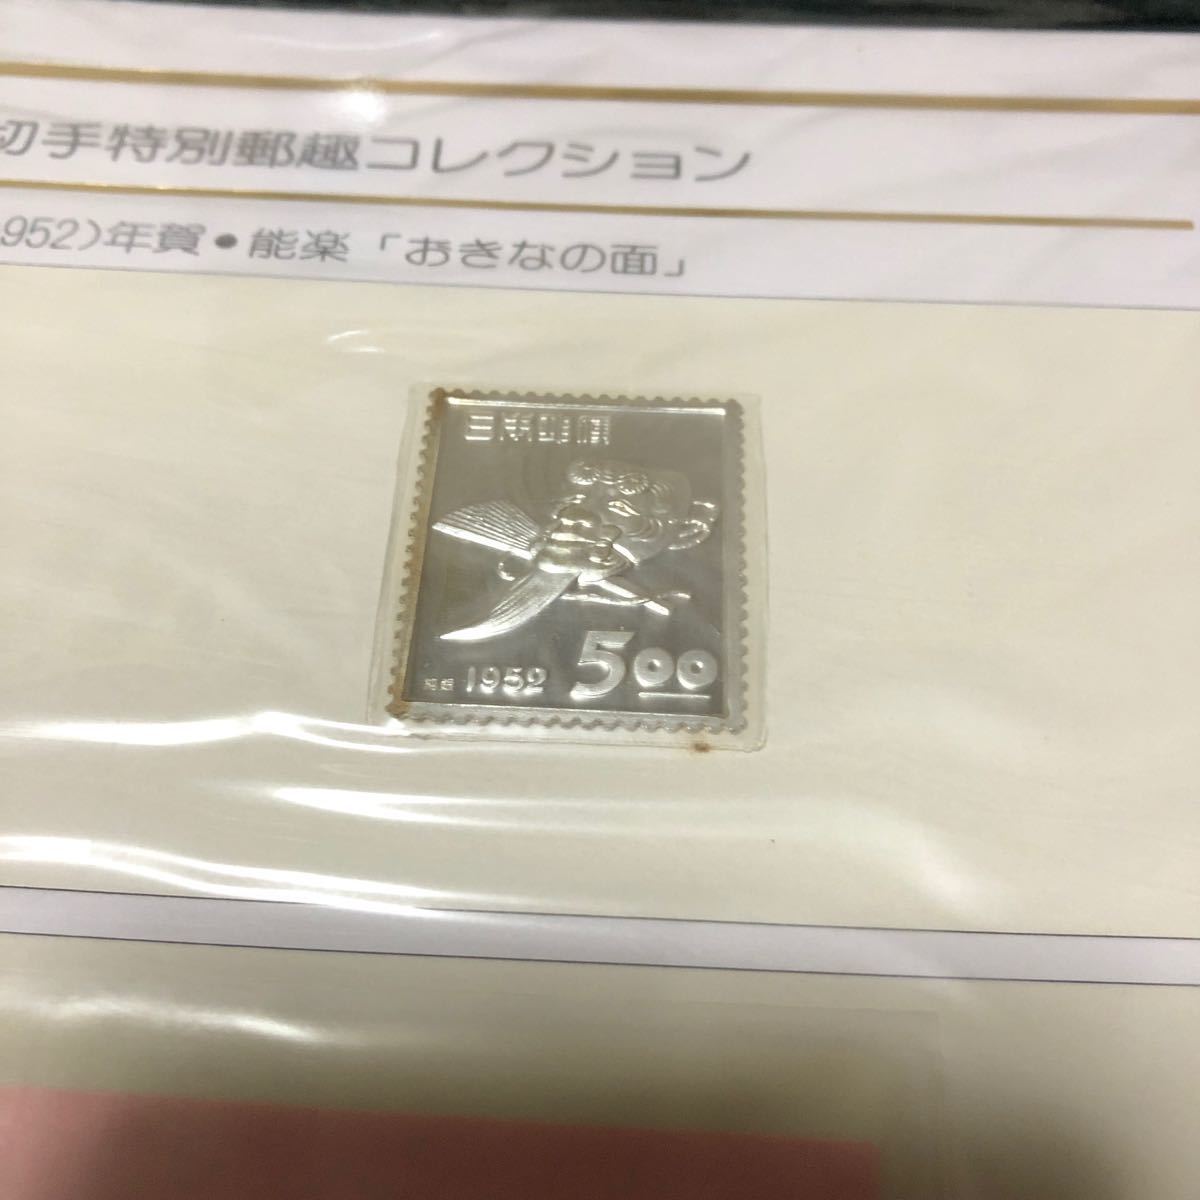 更に値下げしました。日本年賀切手特別郵趣コレクション昭和27年、 28年